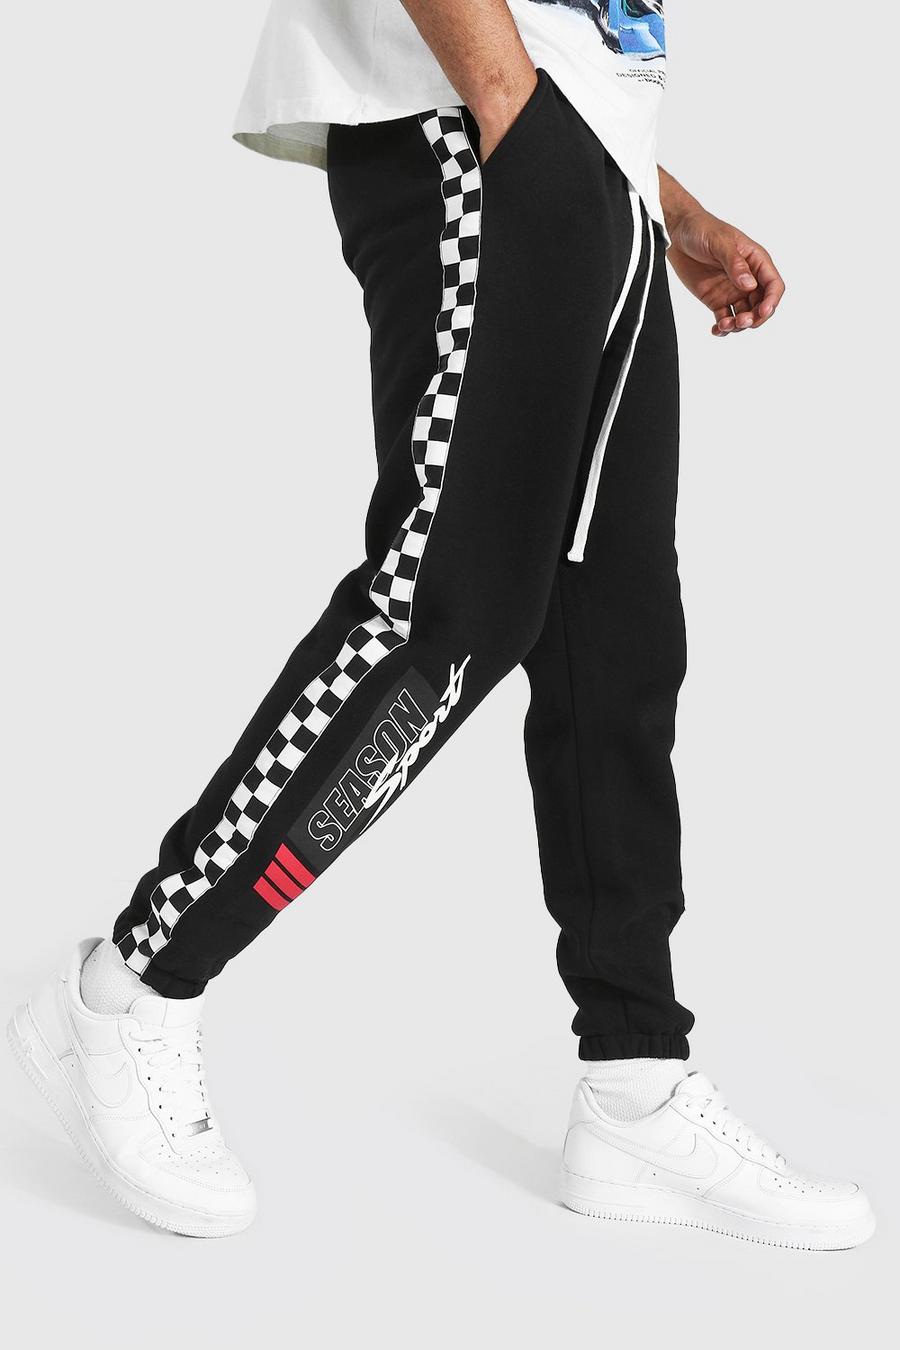 Pantalones de deporte con franjas laterales estándar de tablero de ajedrez, Negro image number 1